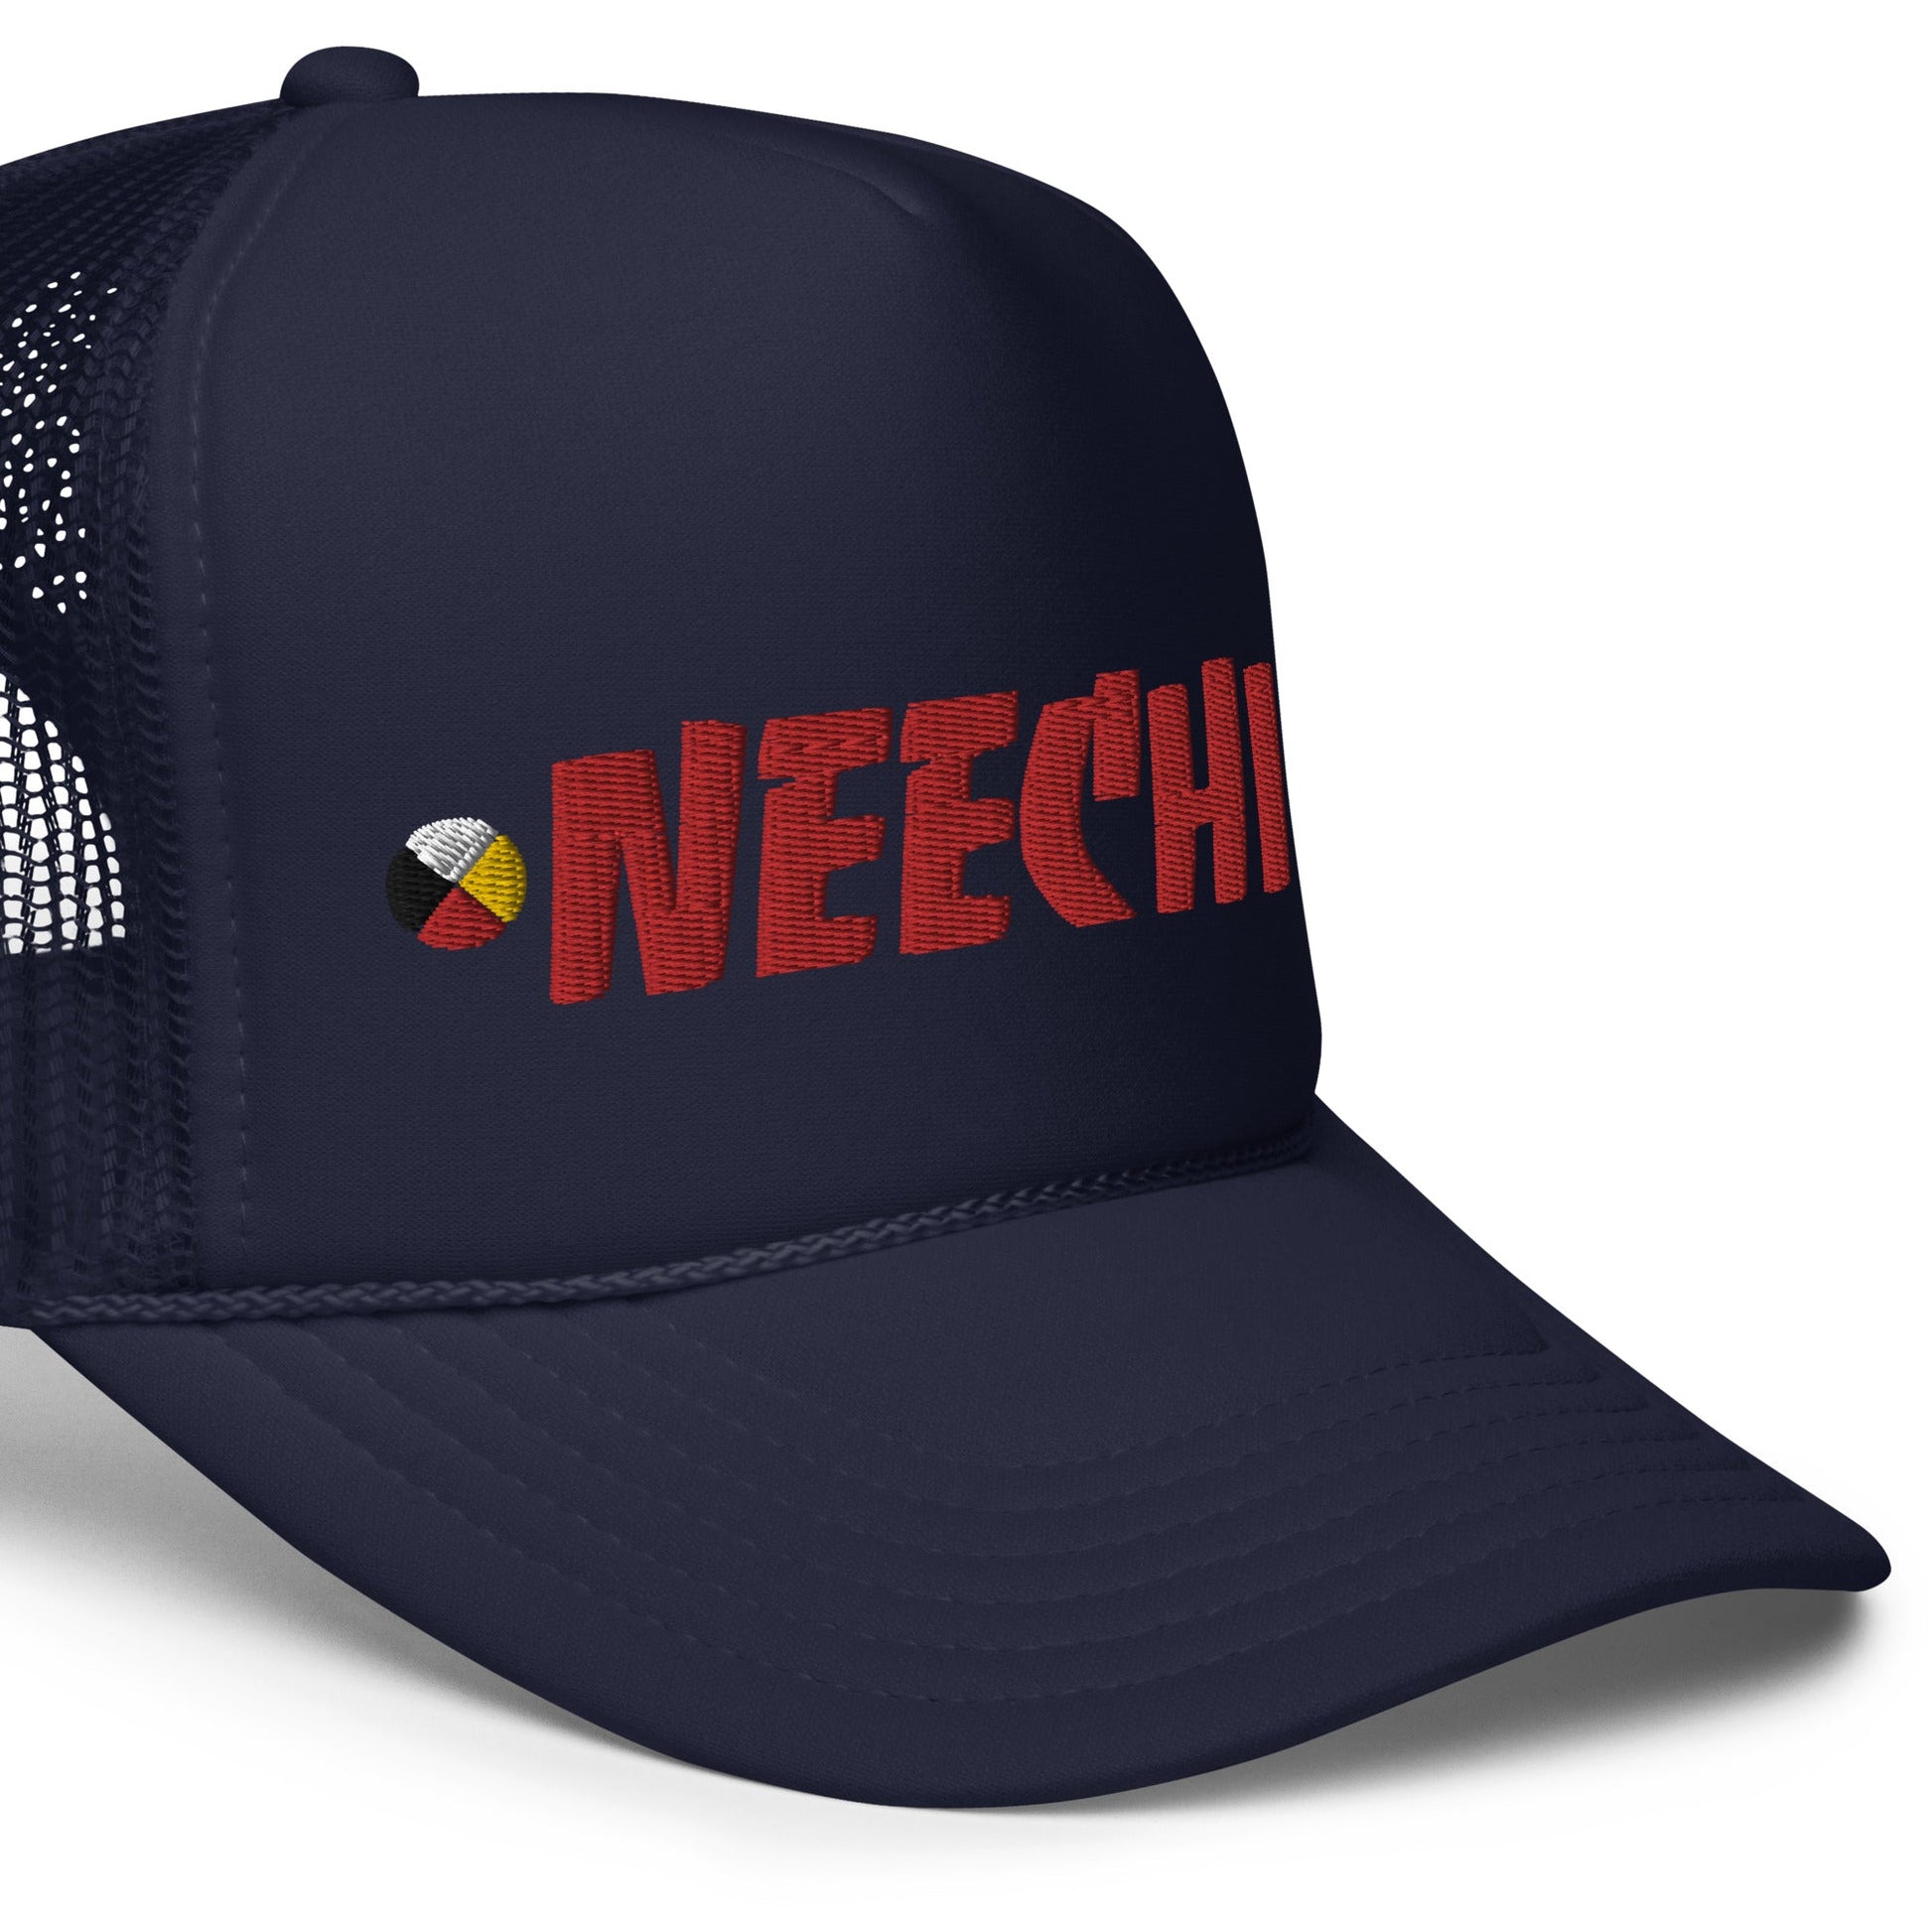 Neechie trucker hat - Nikikw Designs